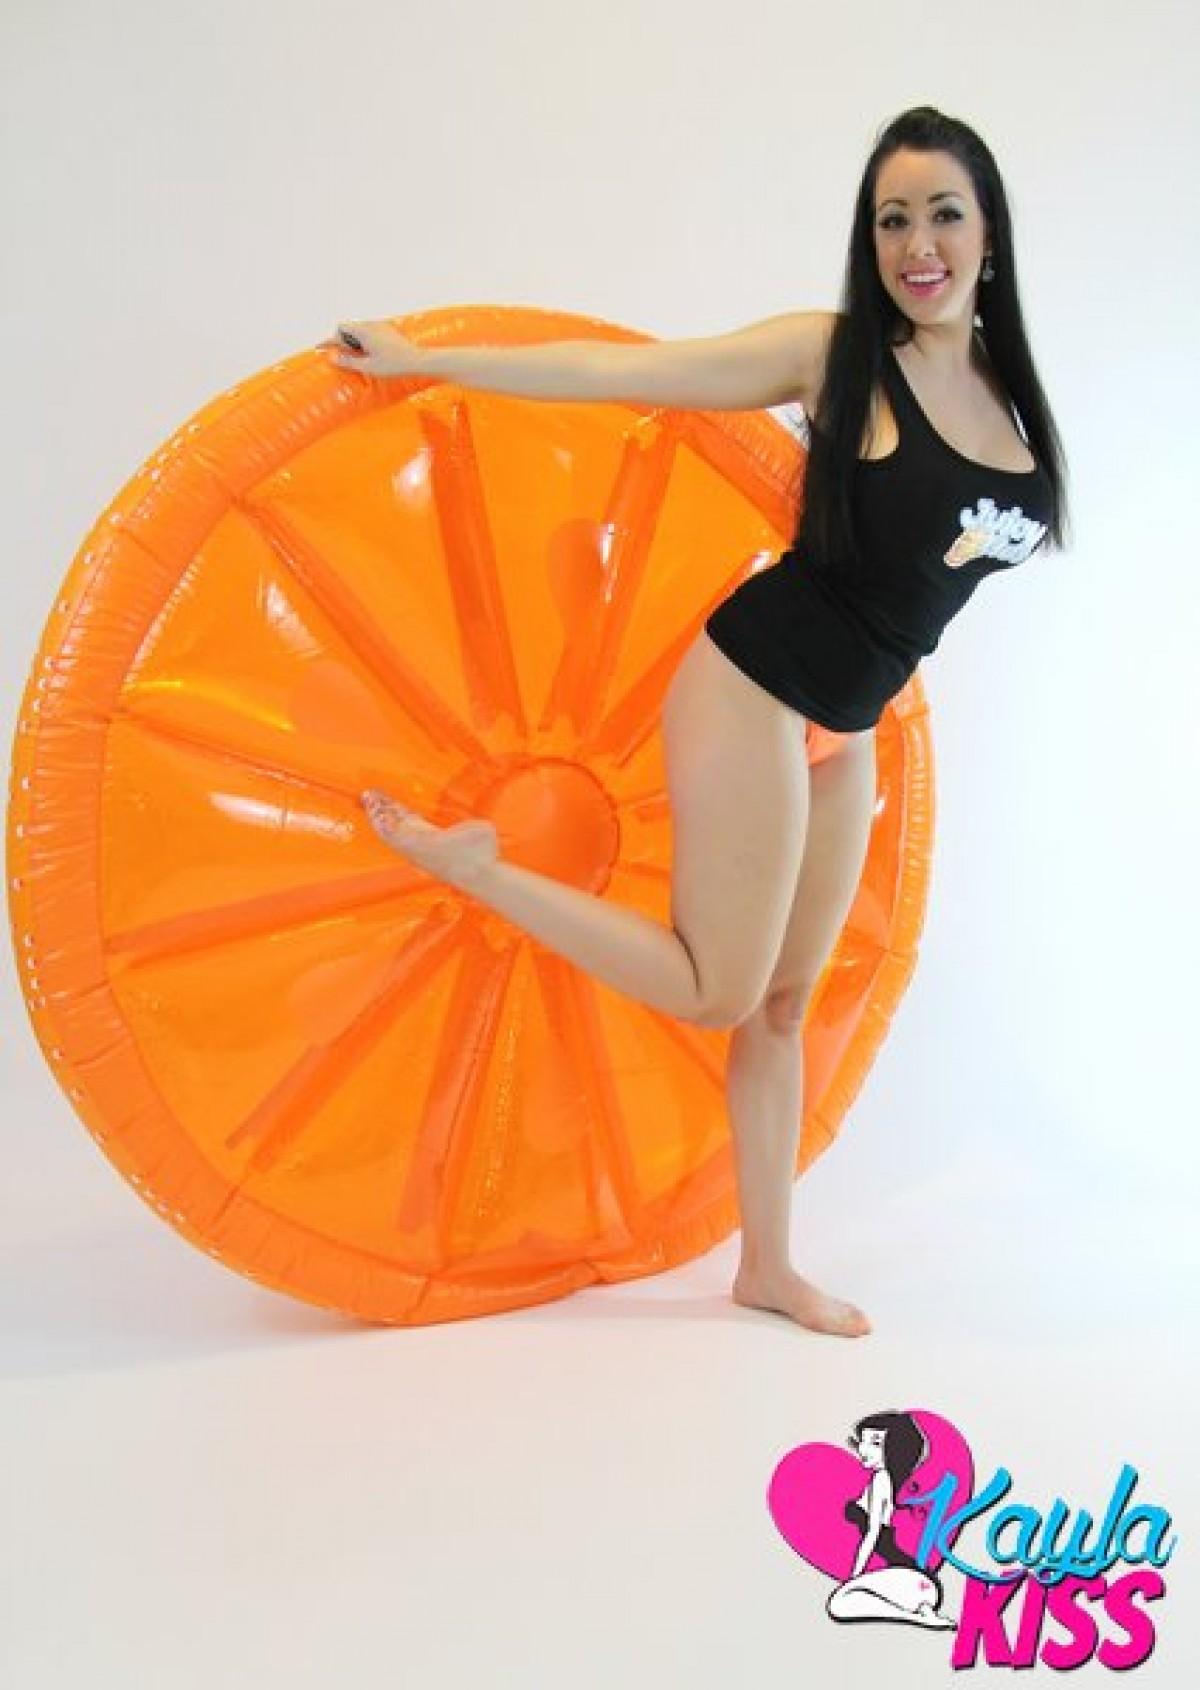 Kayla kiss se déshabille pour vous sur sa grande structure gonflable orange. #58180056